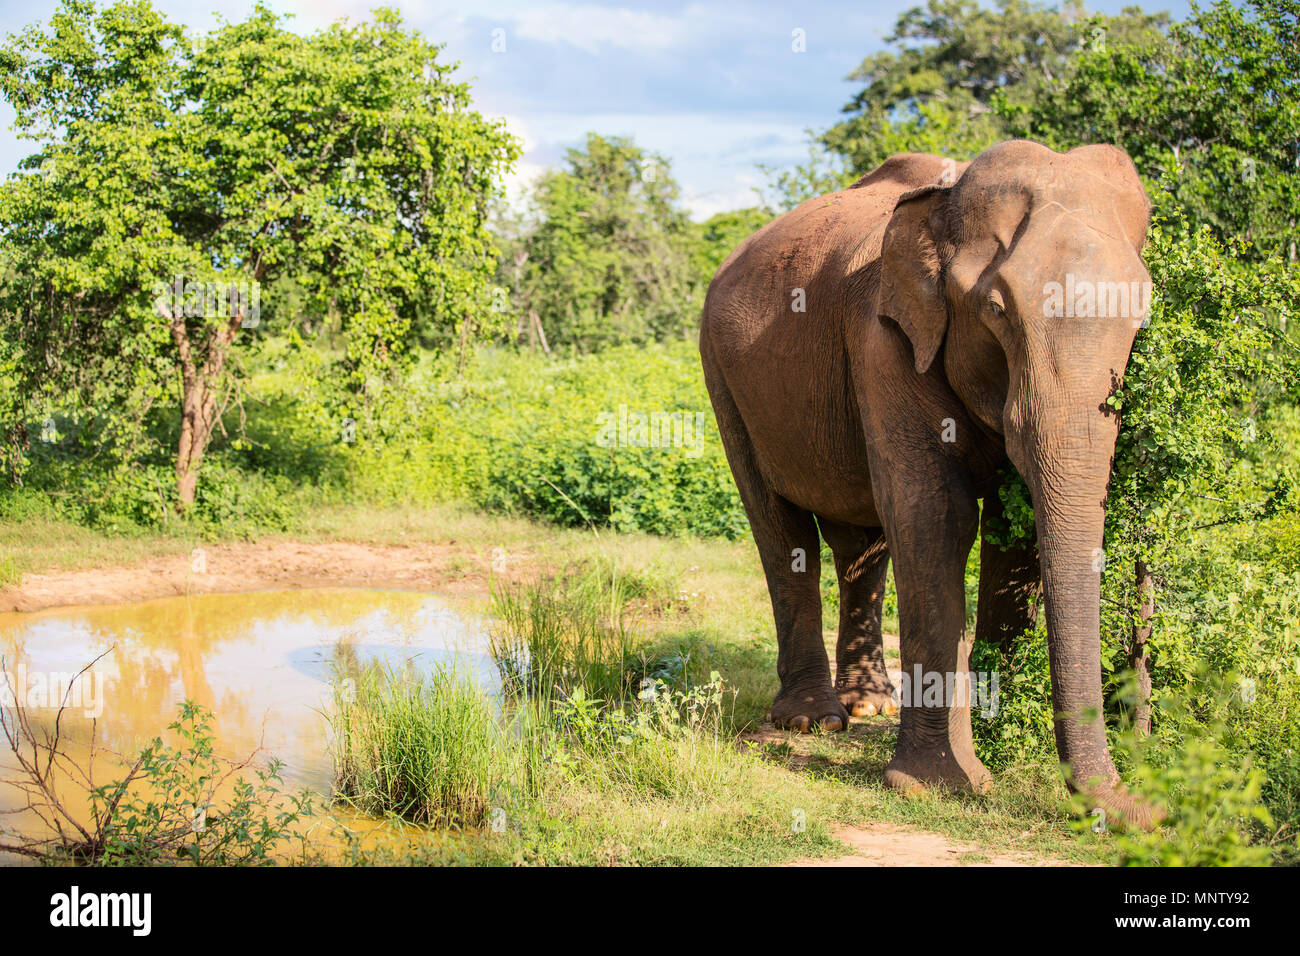 Sri Lankan wild elephant in safari national park Stock Photo